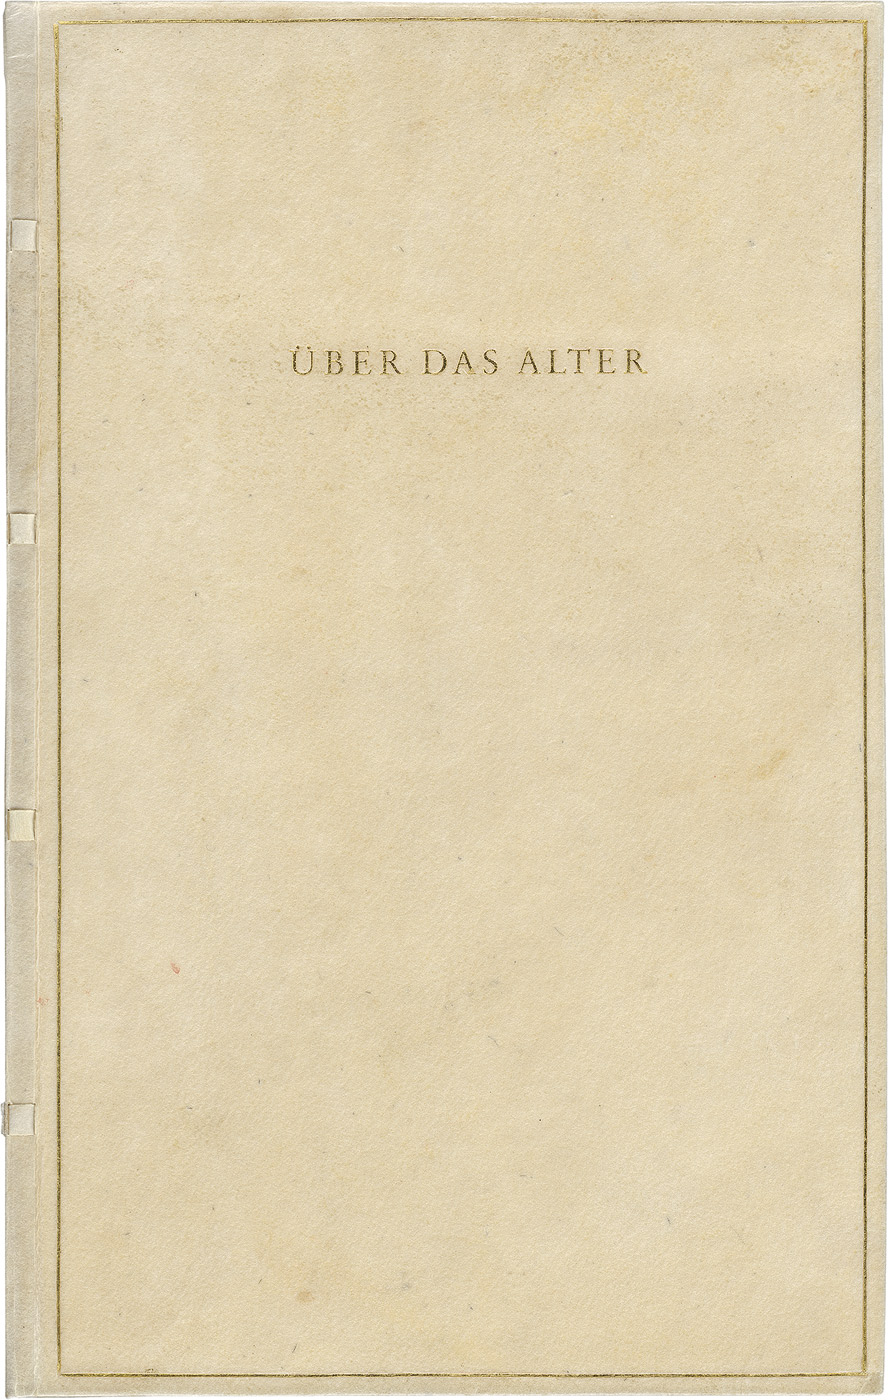 Lot 3184, Auction  115, Hesse, Hermann, Über das Alter